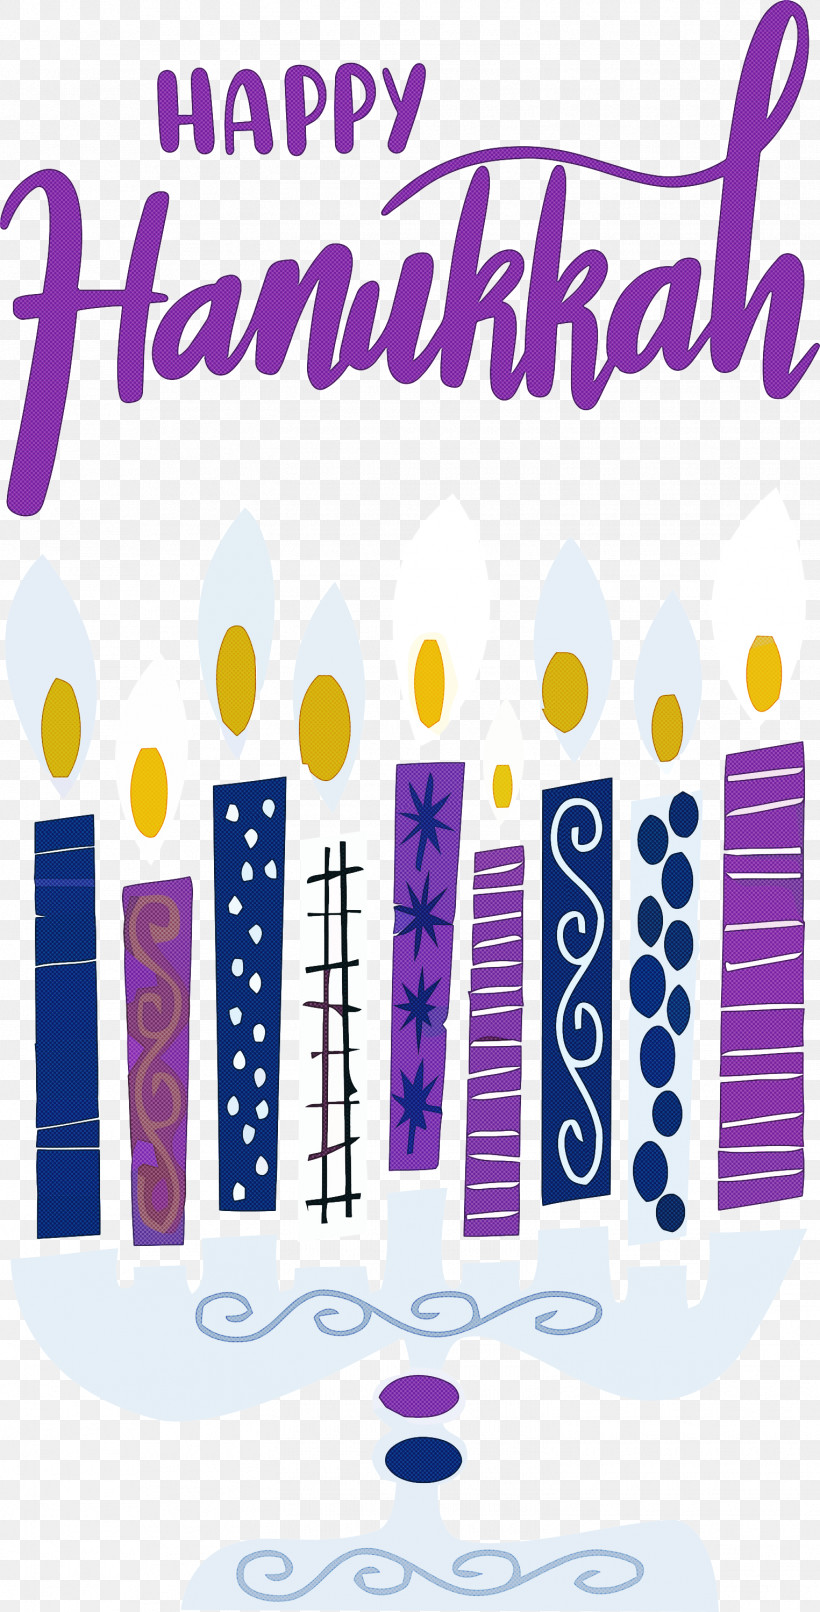 Hanukkah Happy Hanukkah, PNG, 1525x2999px, Hanukkah, Geometry, Happy Hanukkah, Line, Logo Download Free